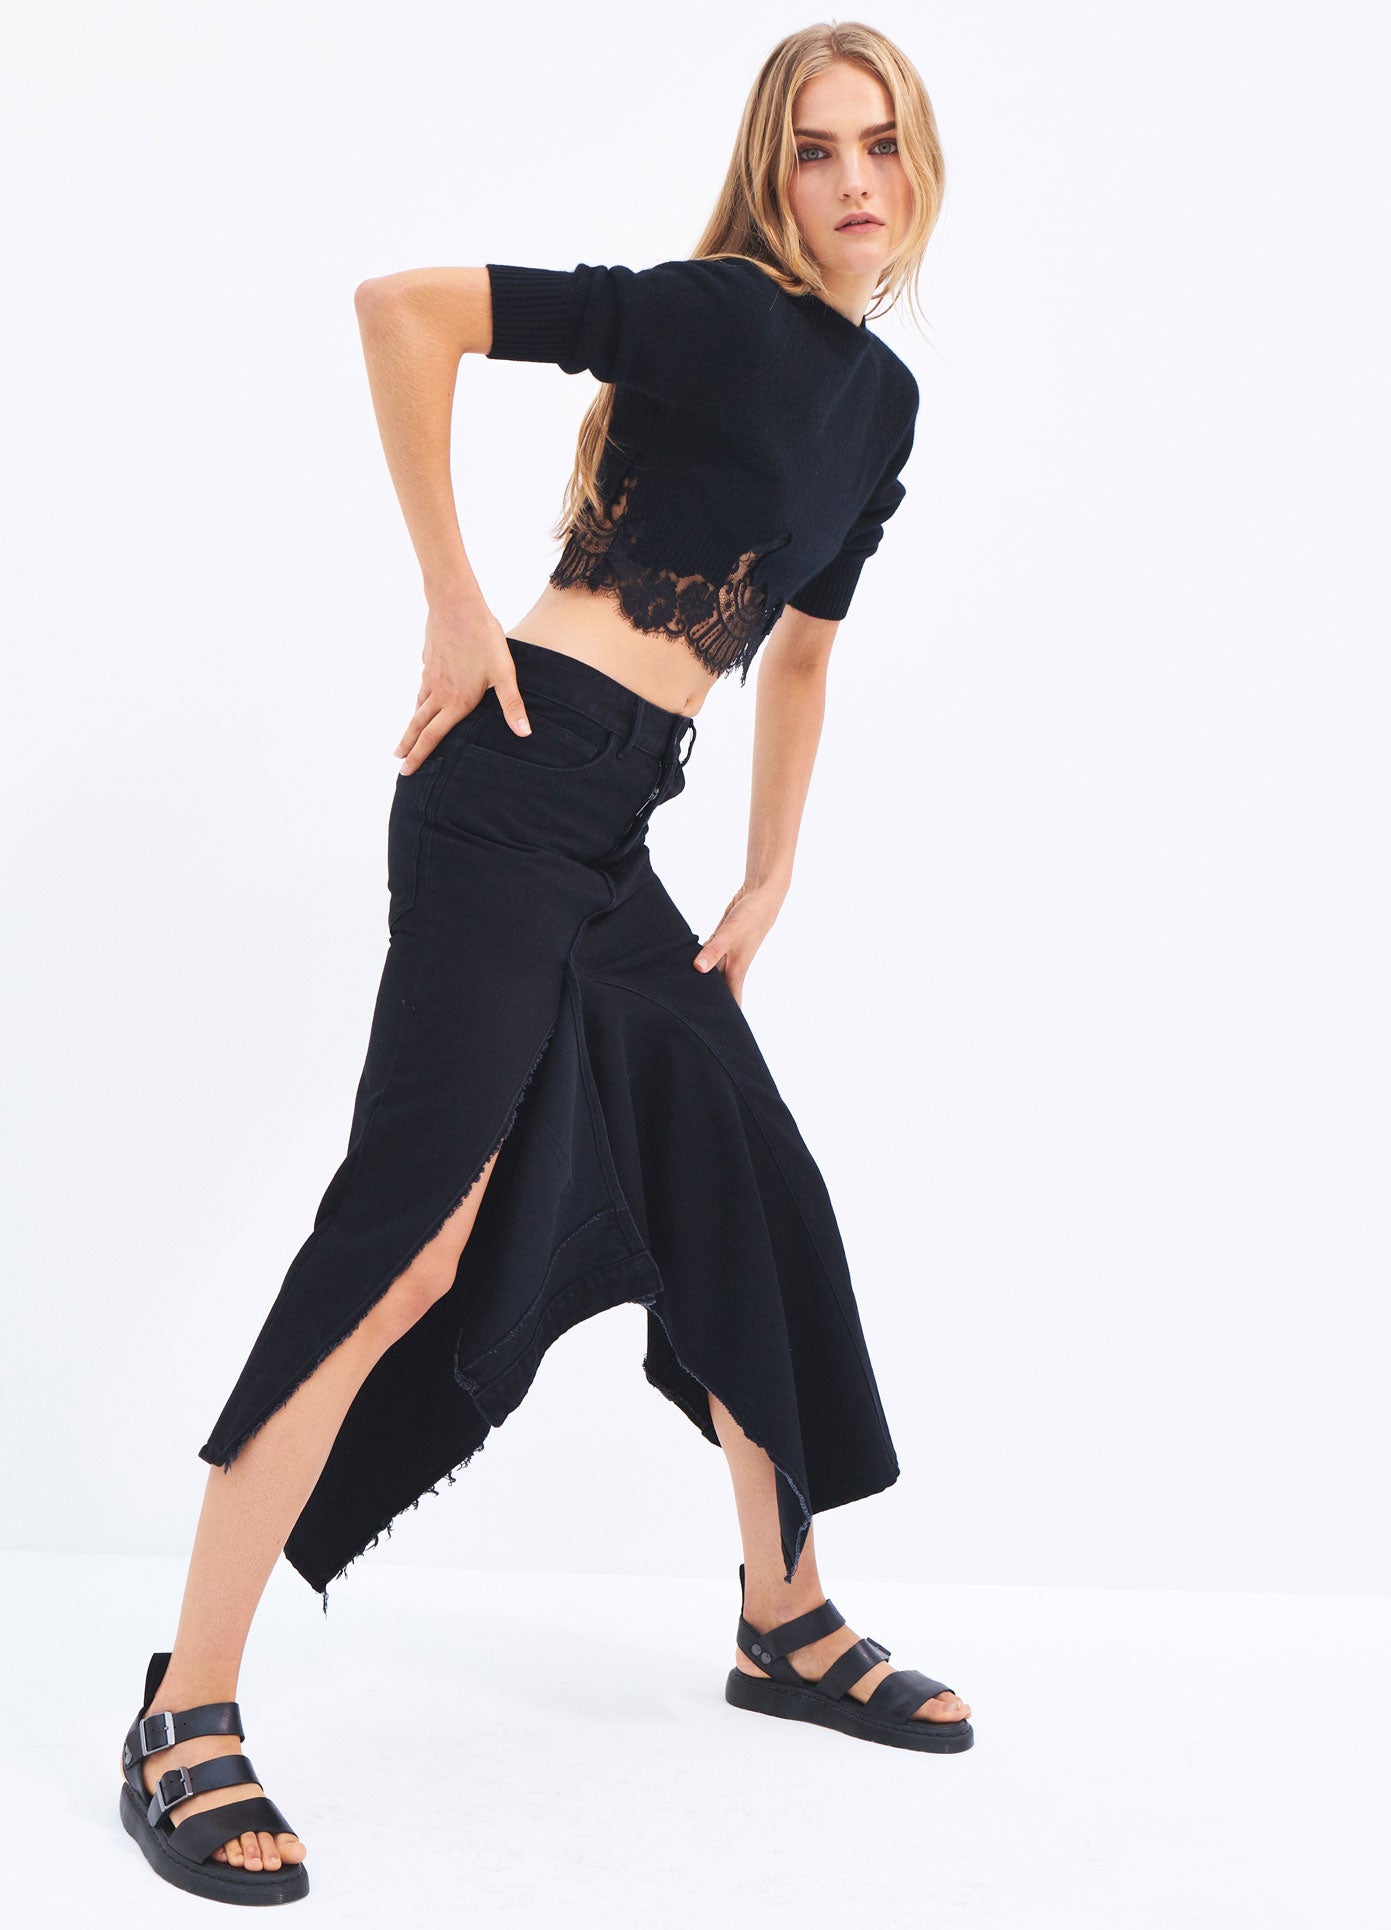 MONSE Spring 2024 Deconstructed Long Denim Skirt in Black on model full side view